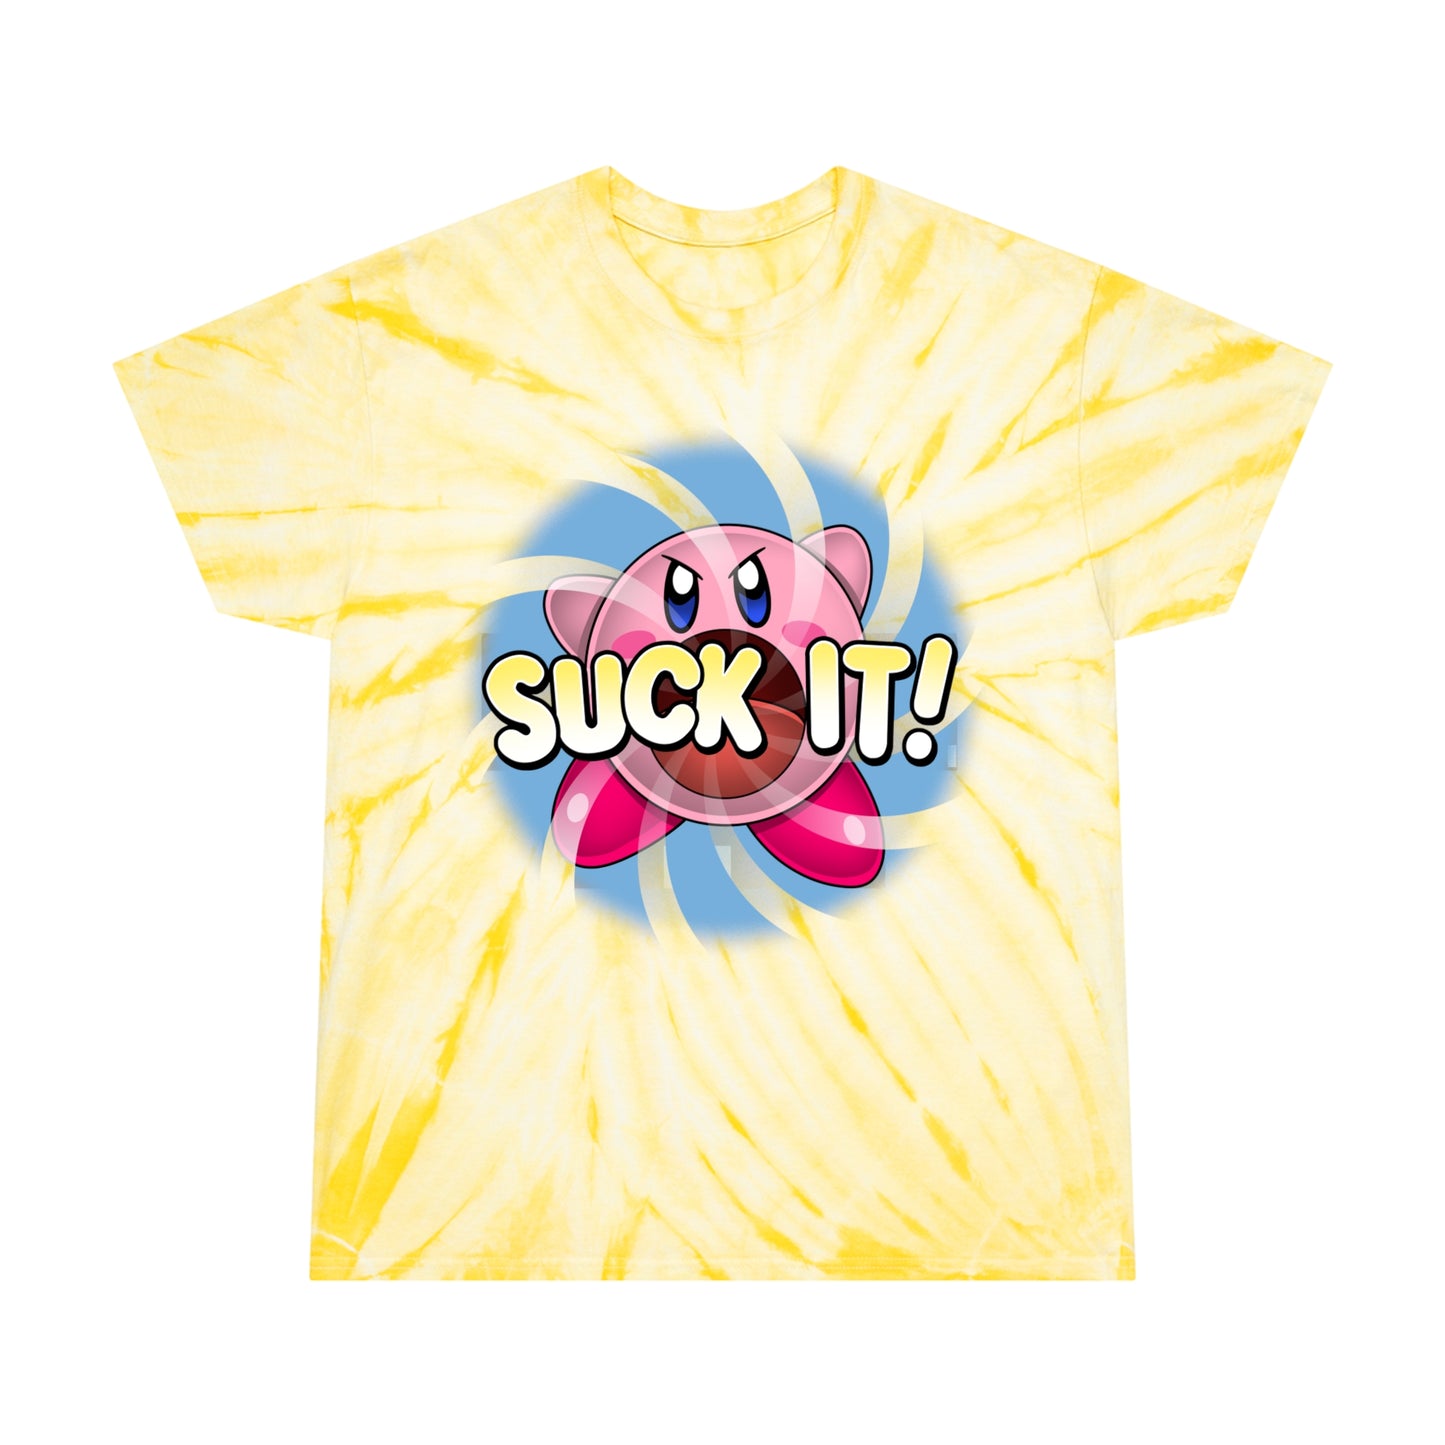 Suck It! tie-dye t-shirt